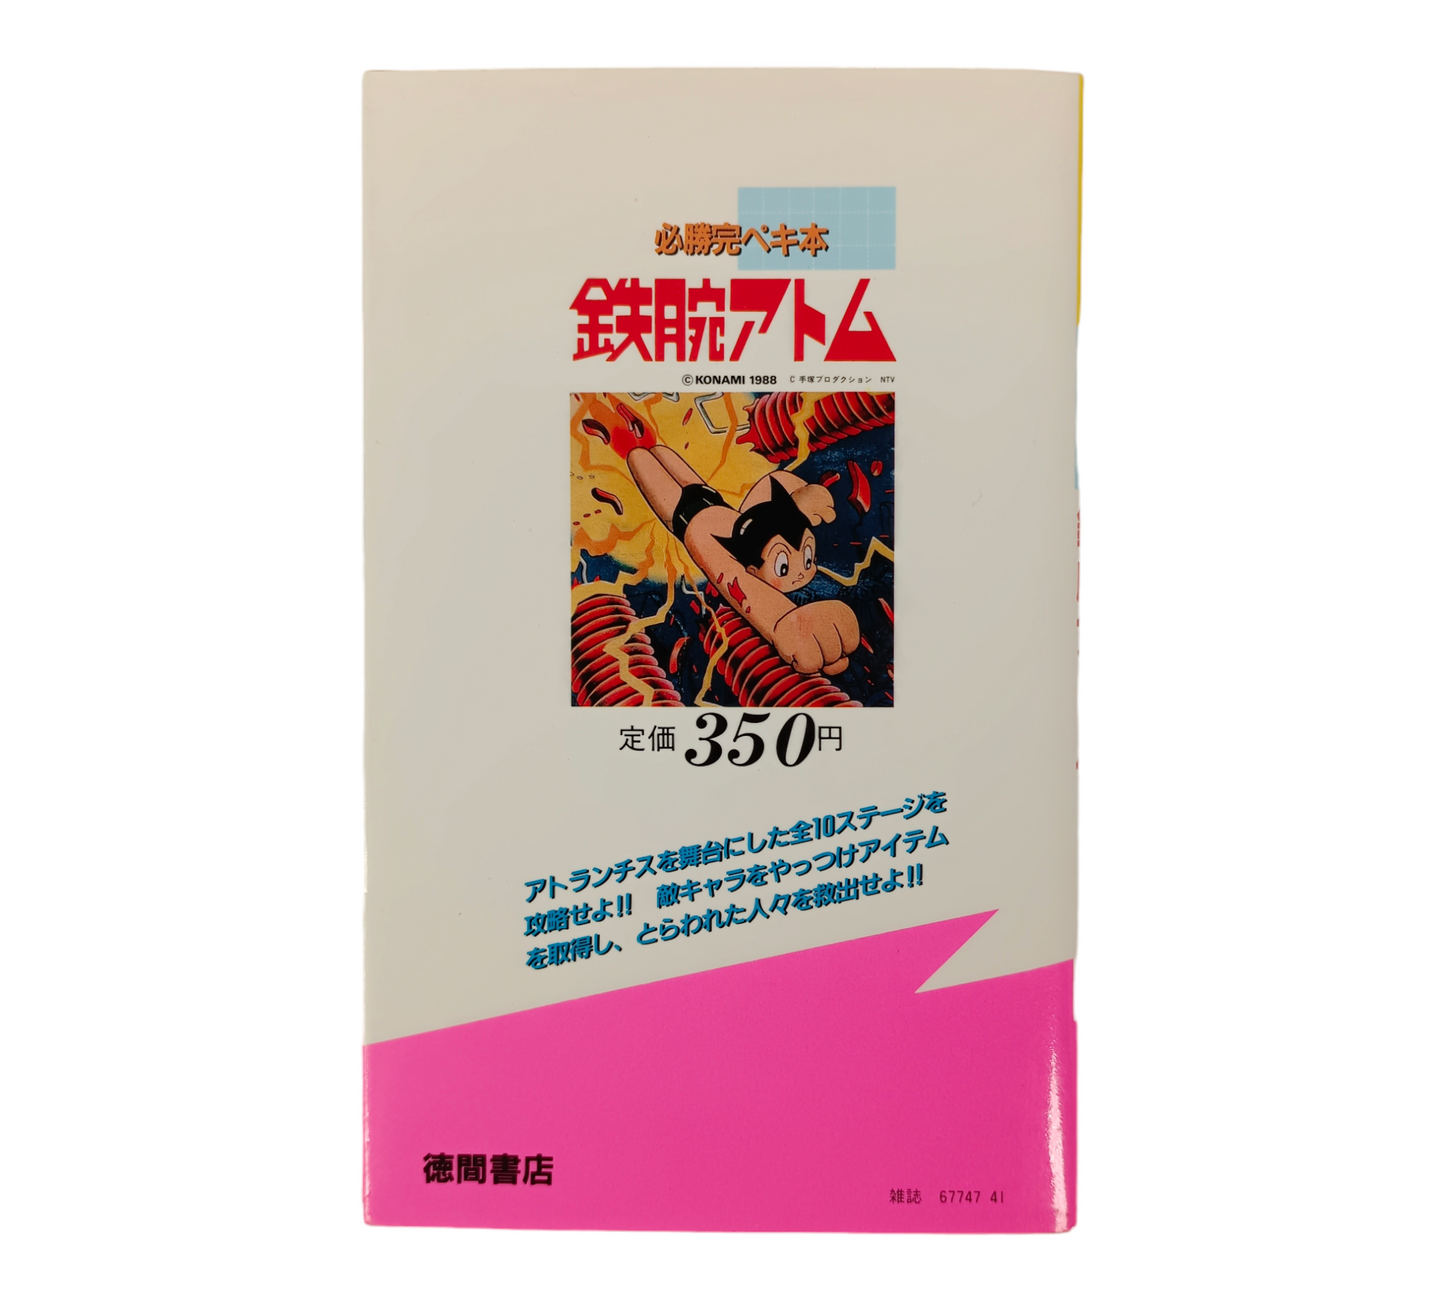 Guide Astro Boy sur Famicom